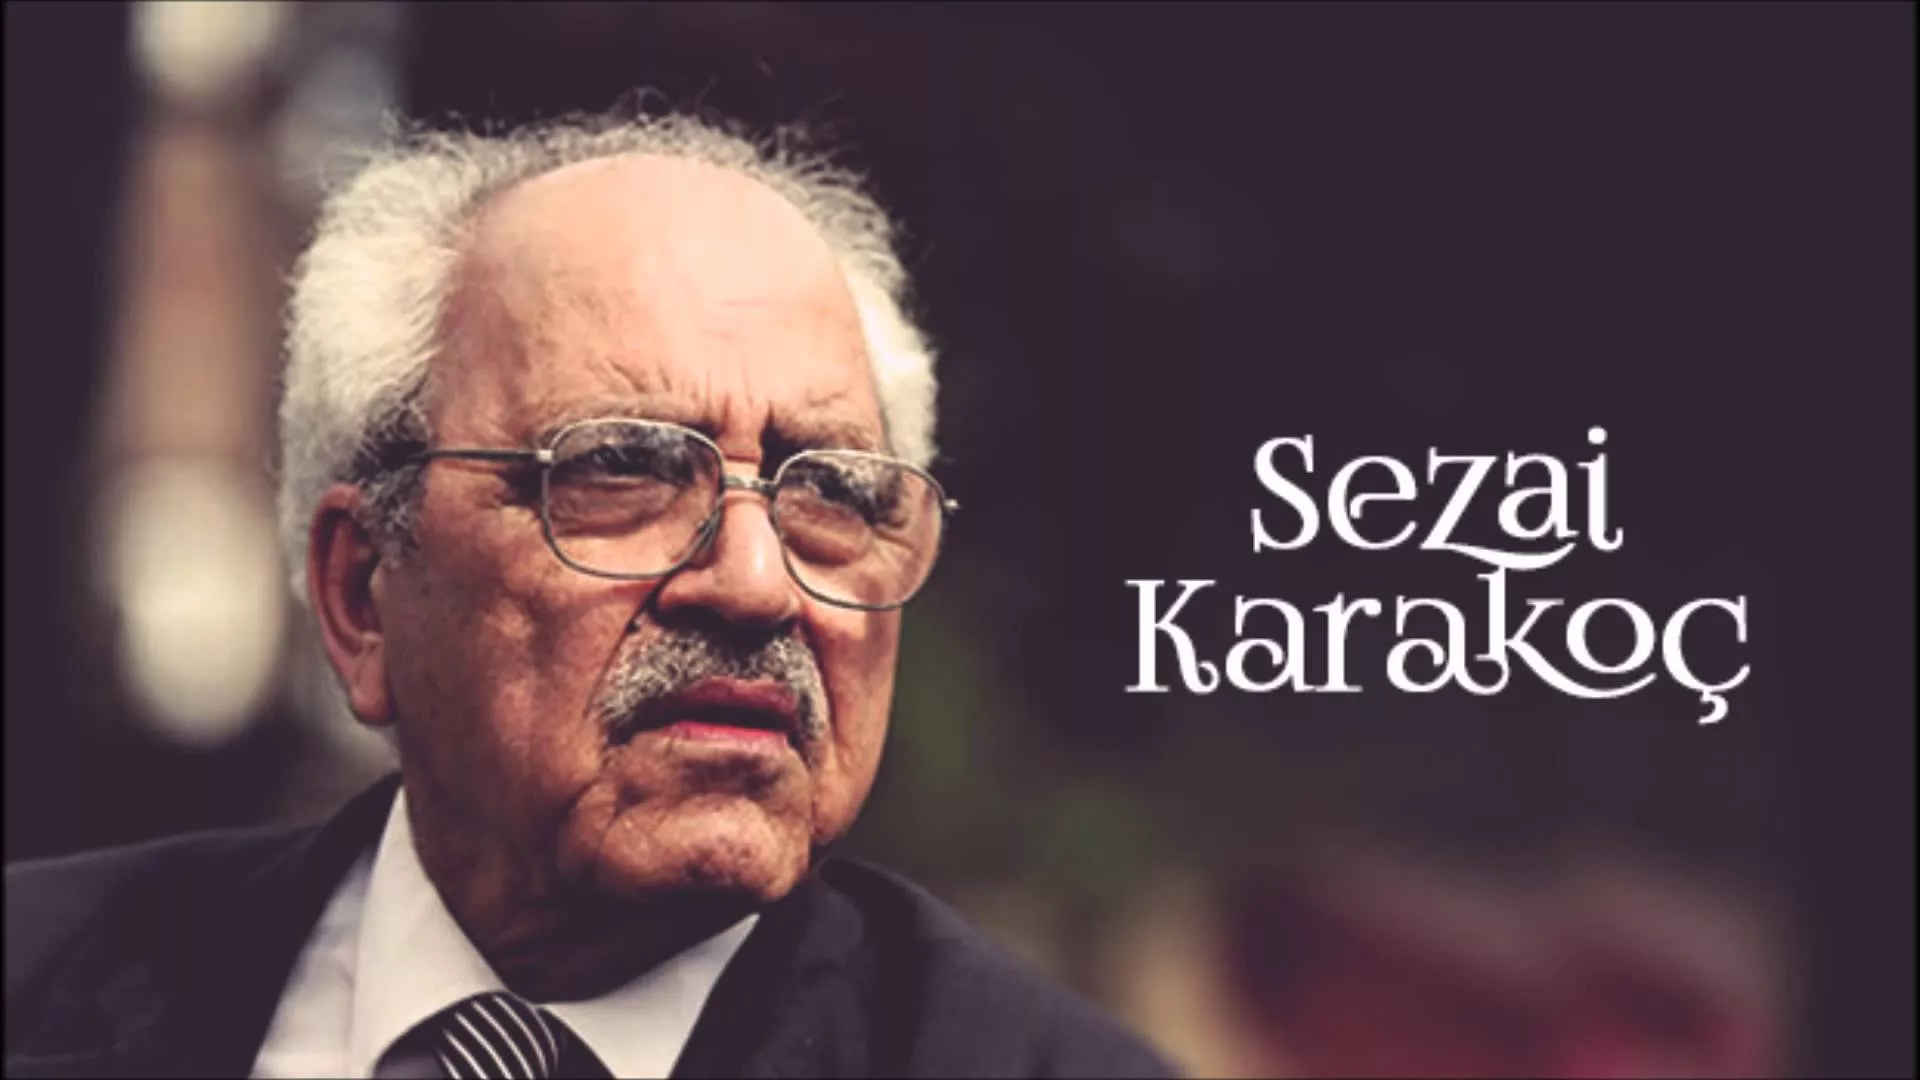 Şair Sezai Karakoç kimdir, kaç yaşında, neden öldü? Sezai Karakoç şiirleri ve kitapları